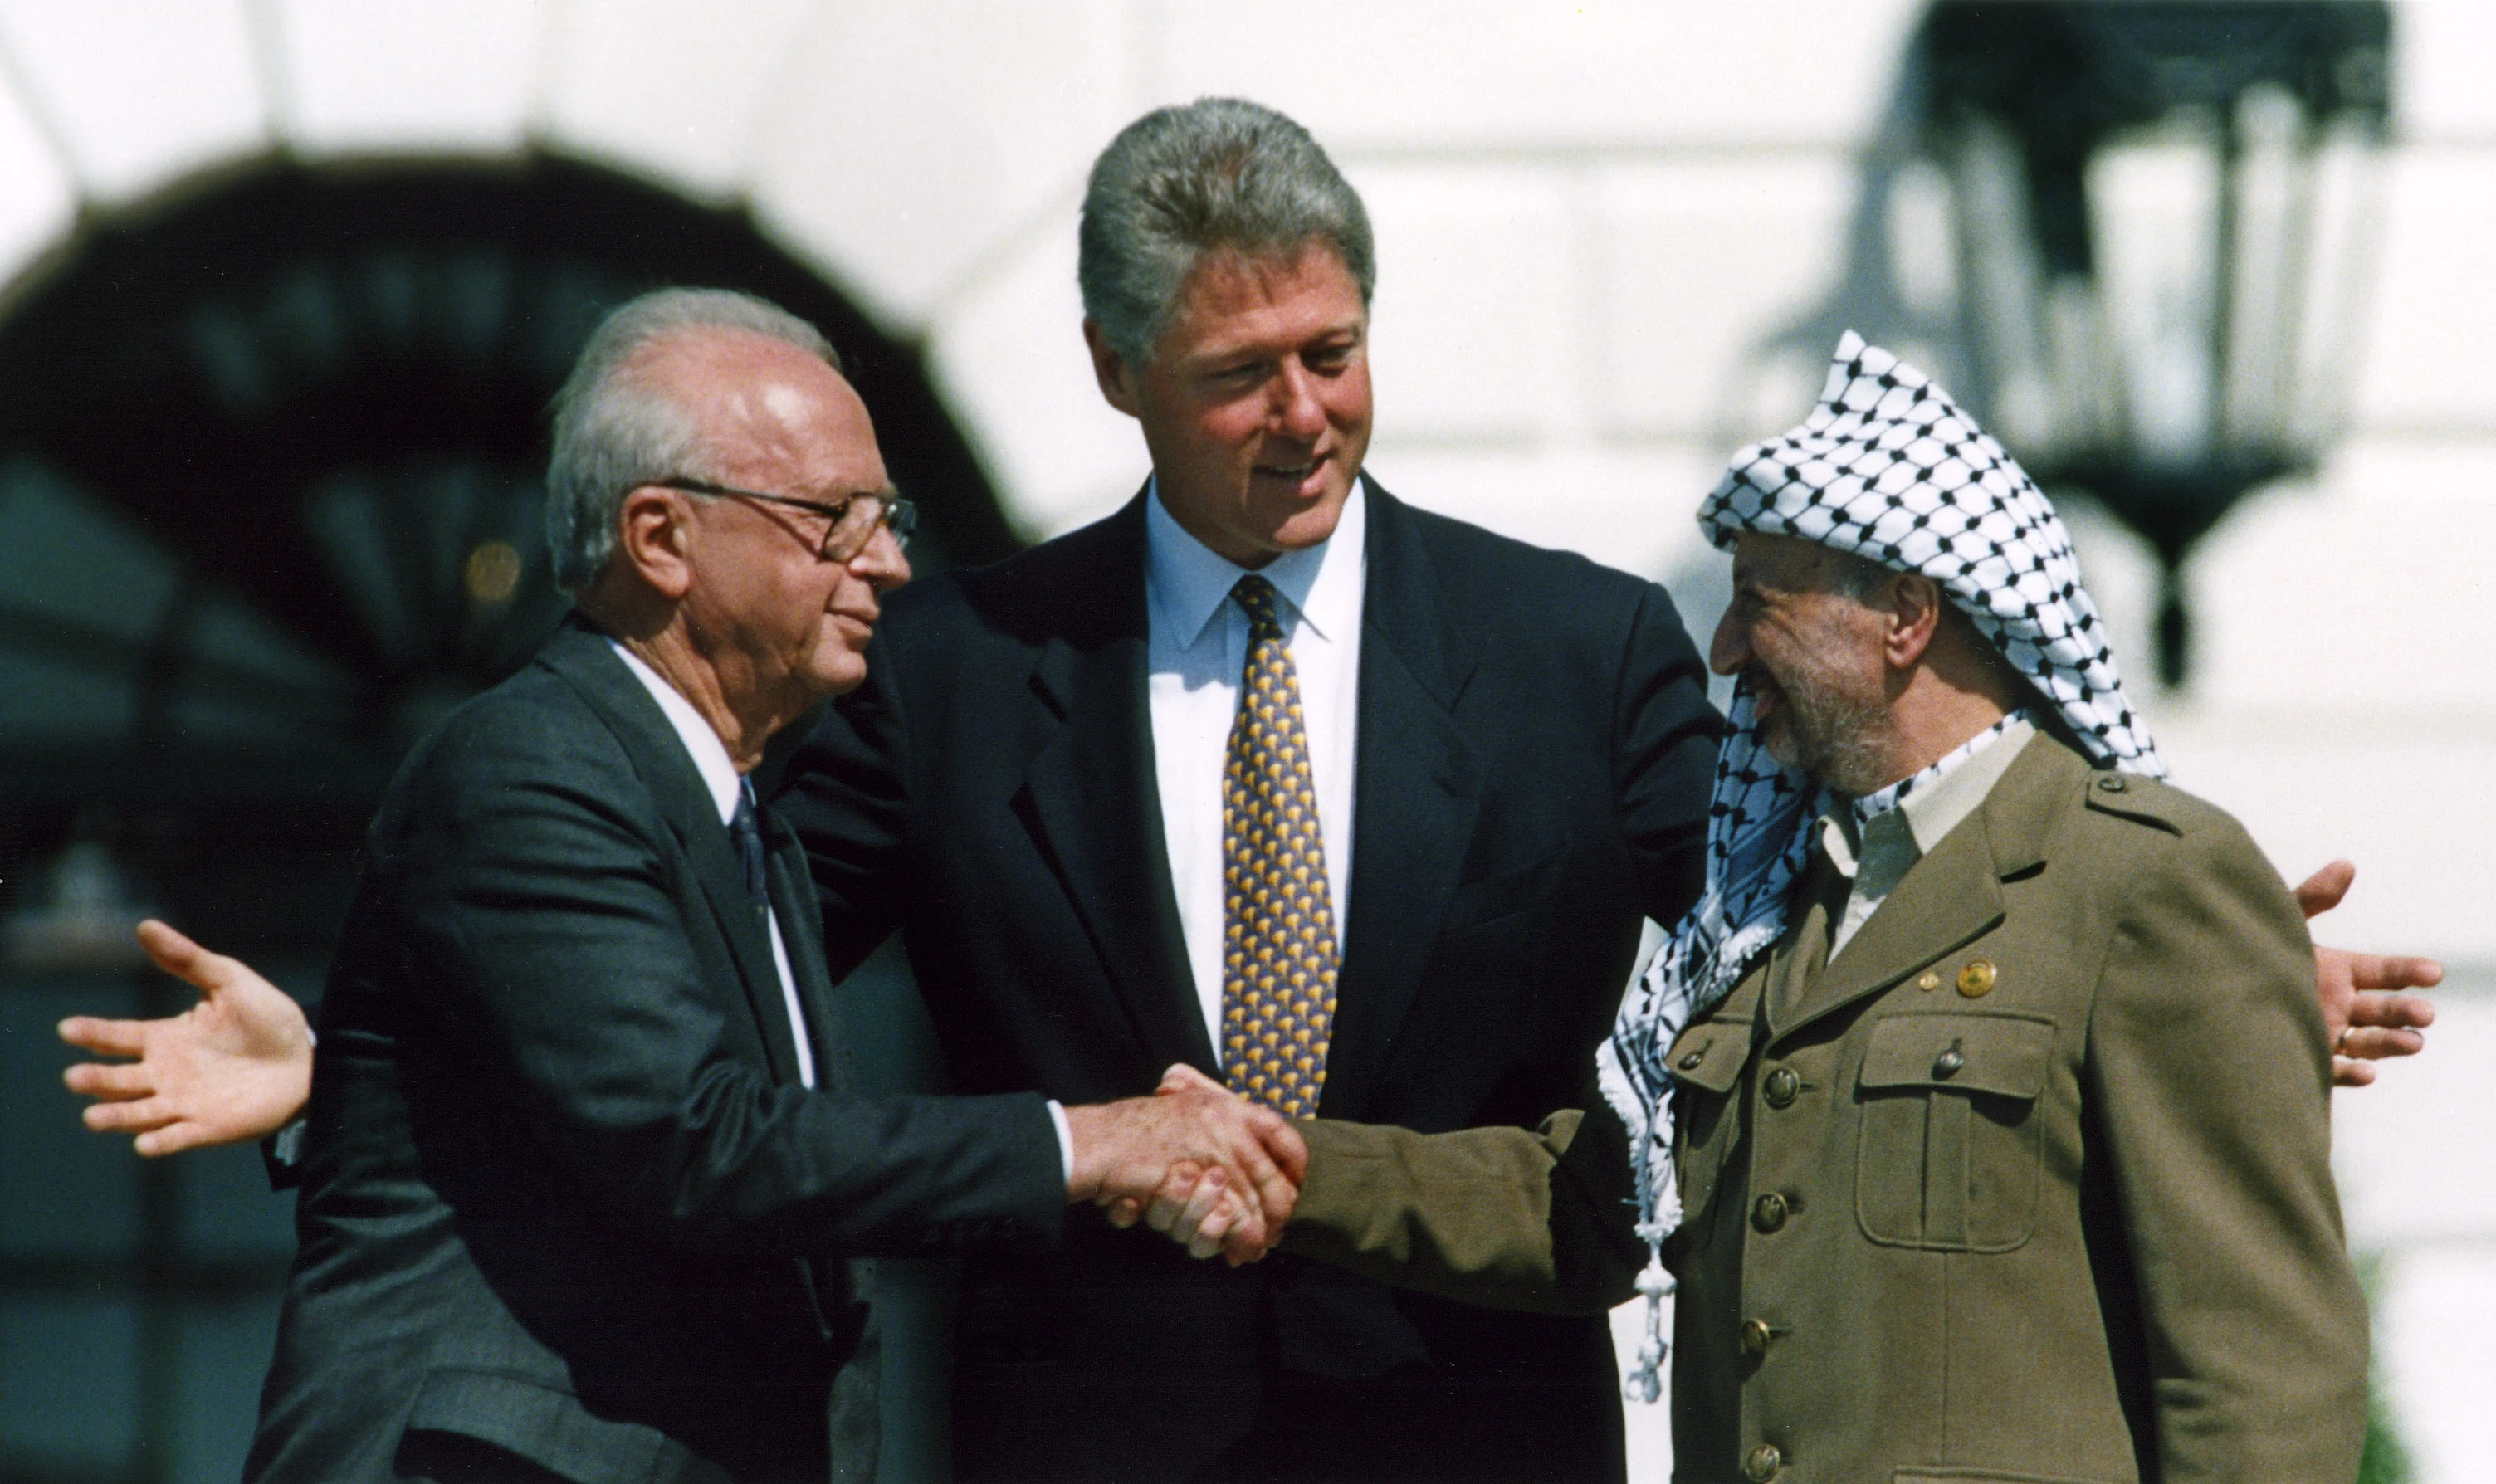 לחיצת היד המפורסמת בטקס חתימת הסכם אוסלו א' בין ישראל והפלסטינים ב-13 בספטמבר 1993 על מדשאת הבית הלבן בוושינגטון. יו''ר אש''ף יאסר ערפאת וראש הממשלה יצחק רבין לוחצים יד וביניהם הנשיא ביל קלינטון